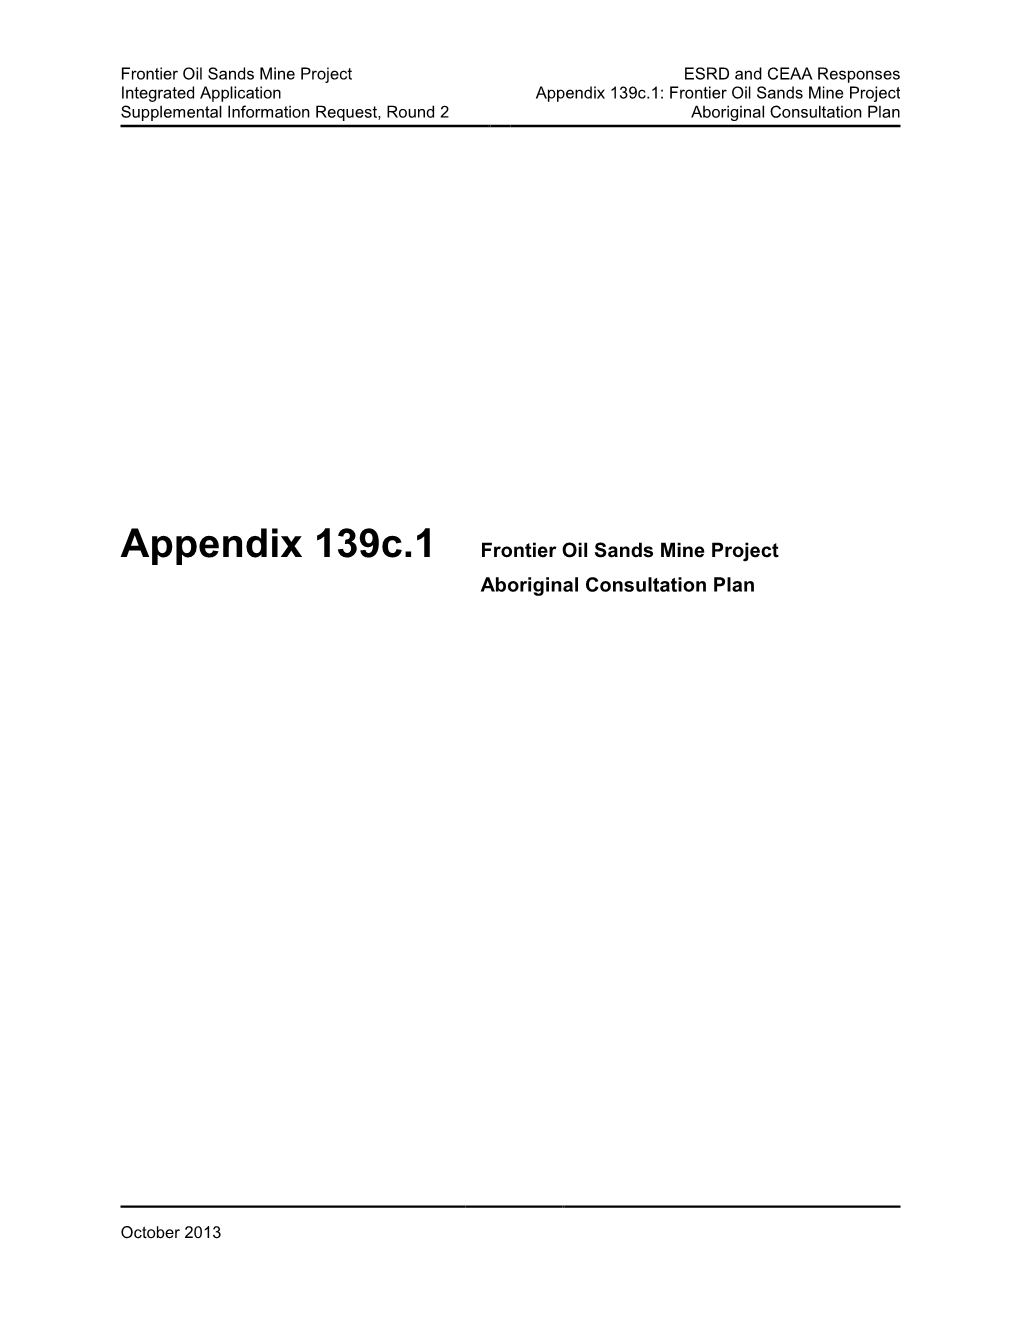 Appendix 139C.1 Frontier Oil Sands Mine Project Aboriginal Consultation Plan